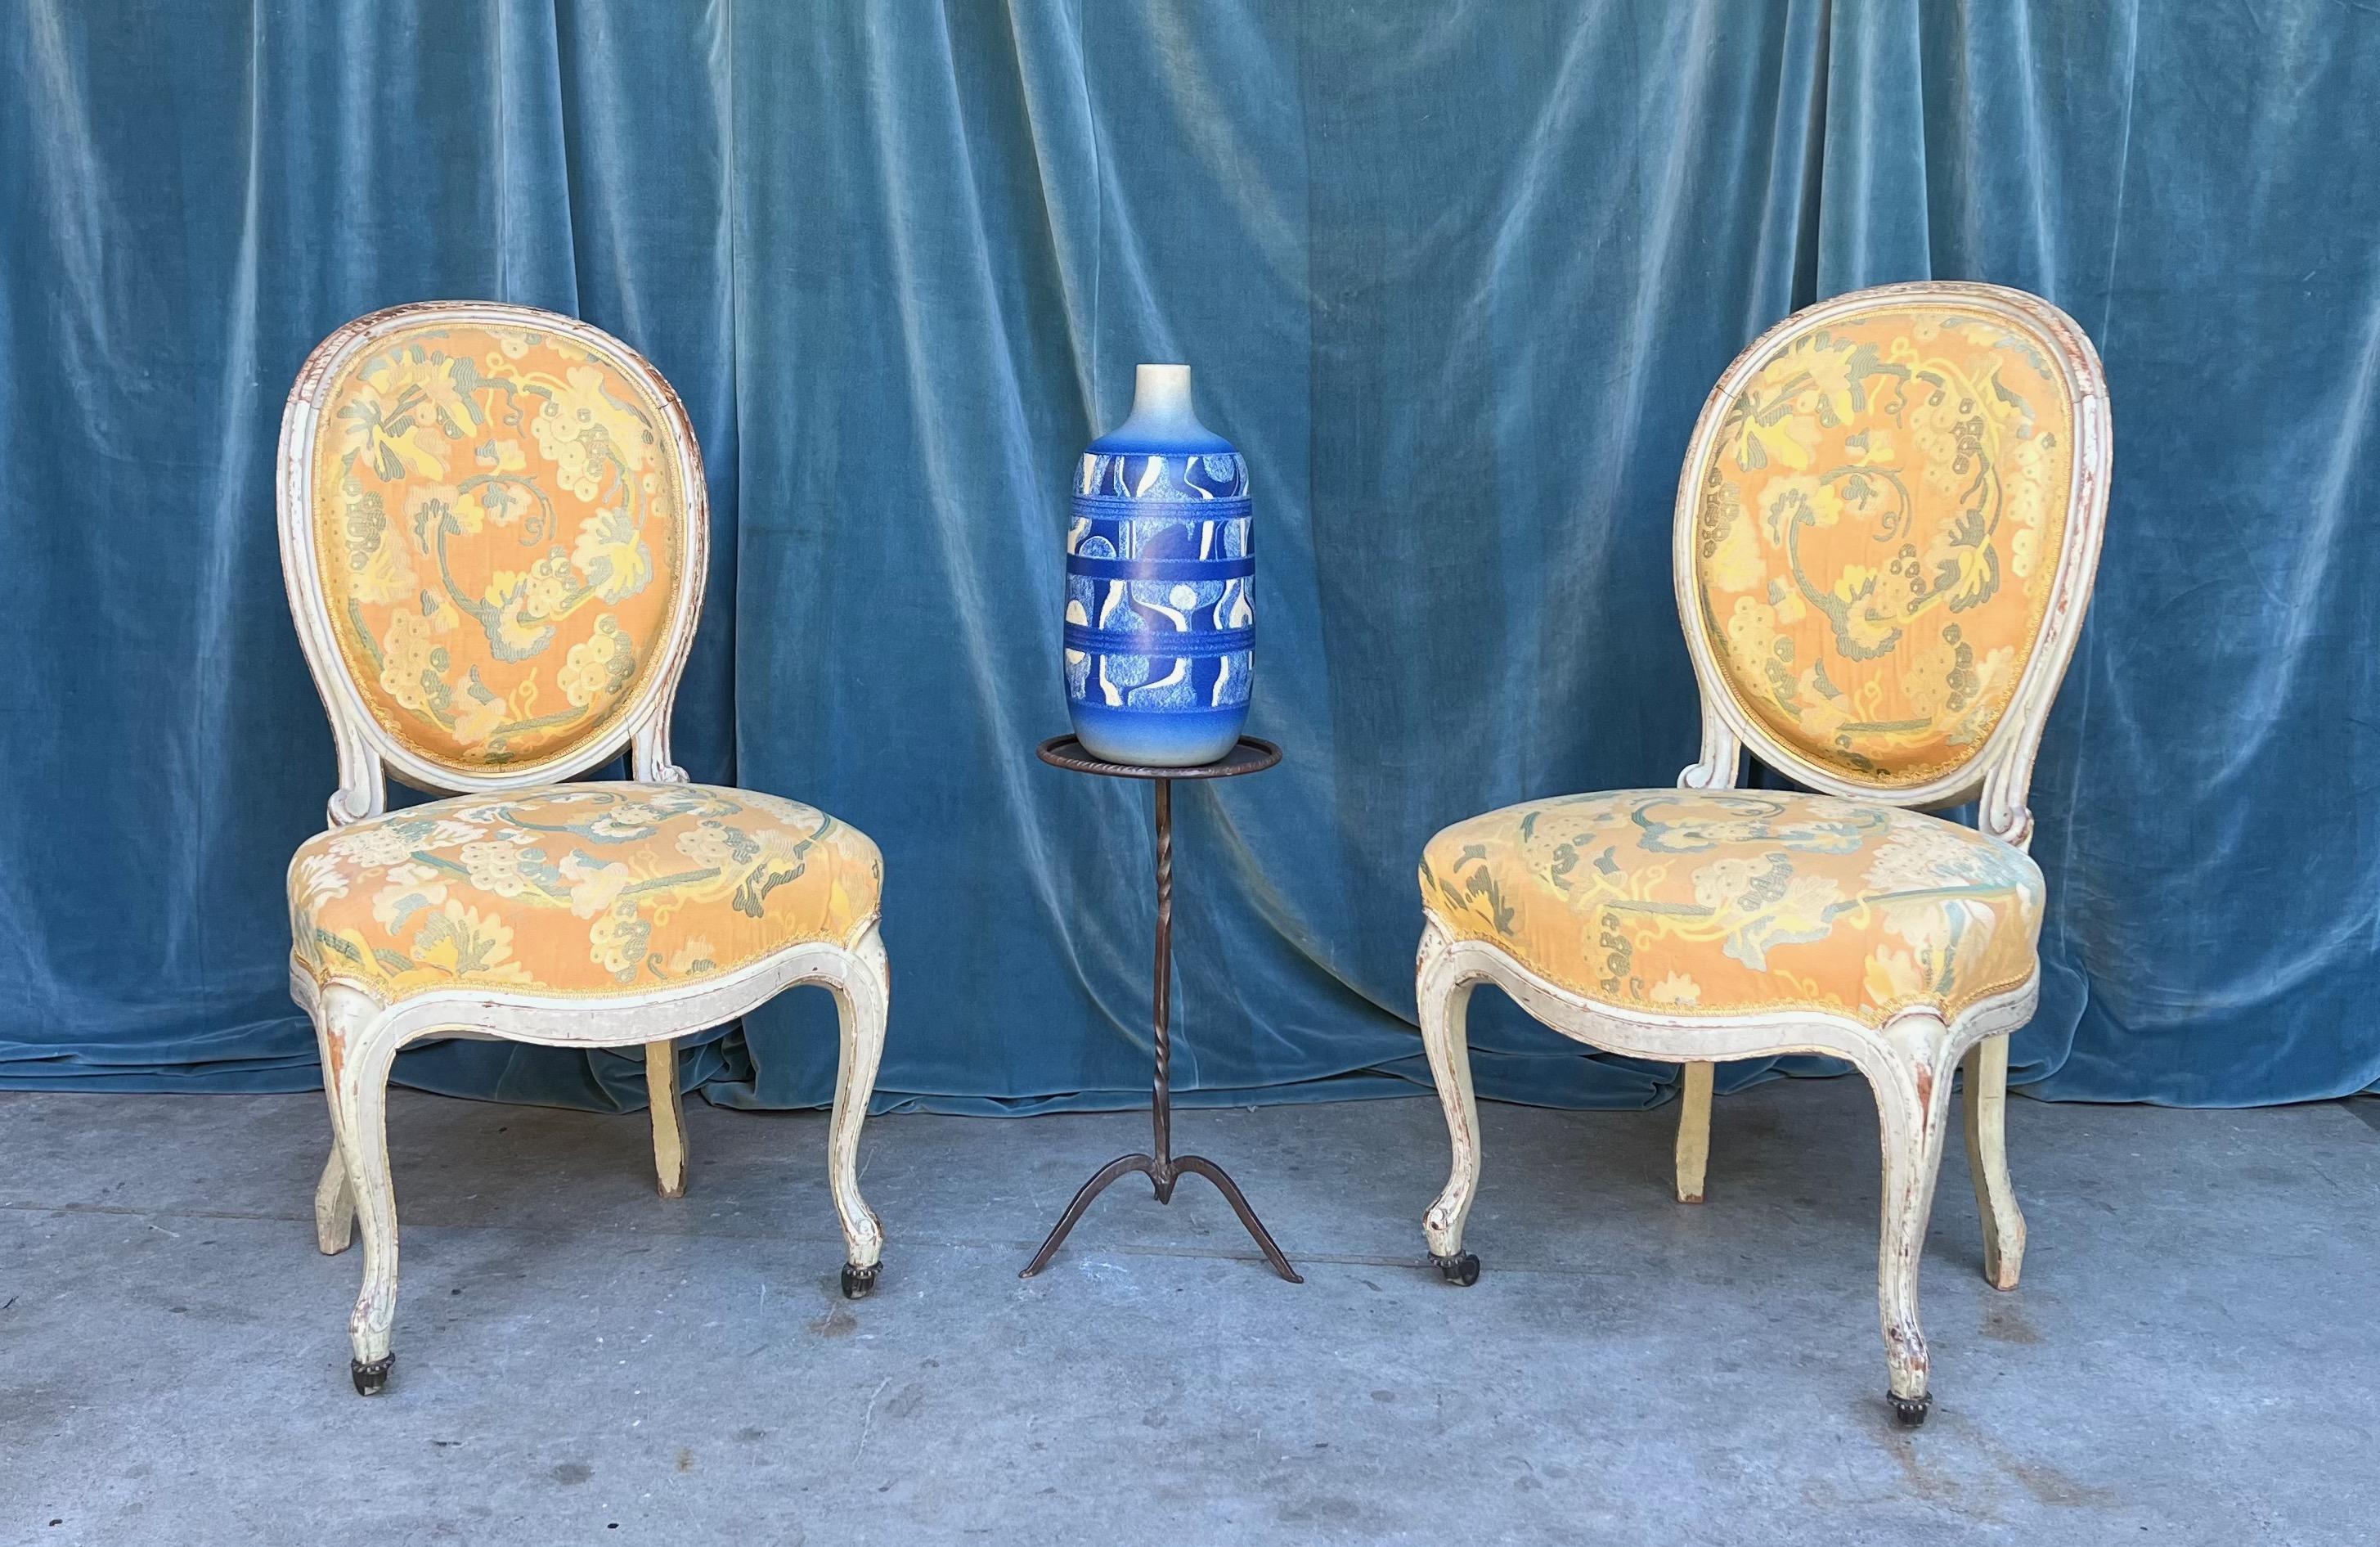 Une belle paire de chaises d'appoint de style Louis XV en tissu à motifs jaunes avec des cadres peints en blanc avec des traces de dorure. Cette superbe paire de chaises d'appoint de style Louis XV ajoutera une touche d'élégance et de sophistication